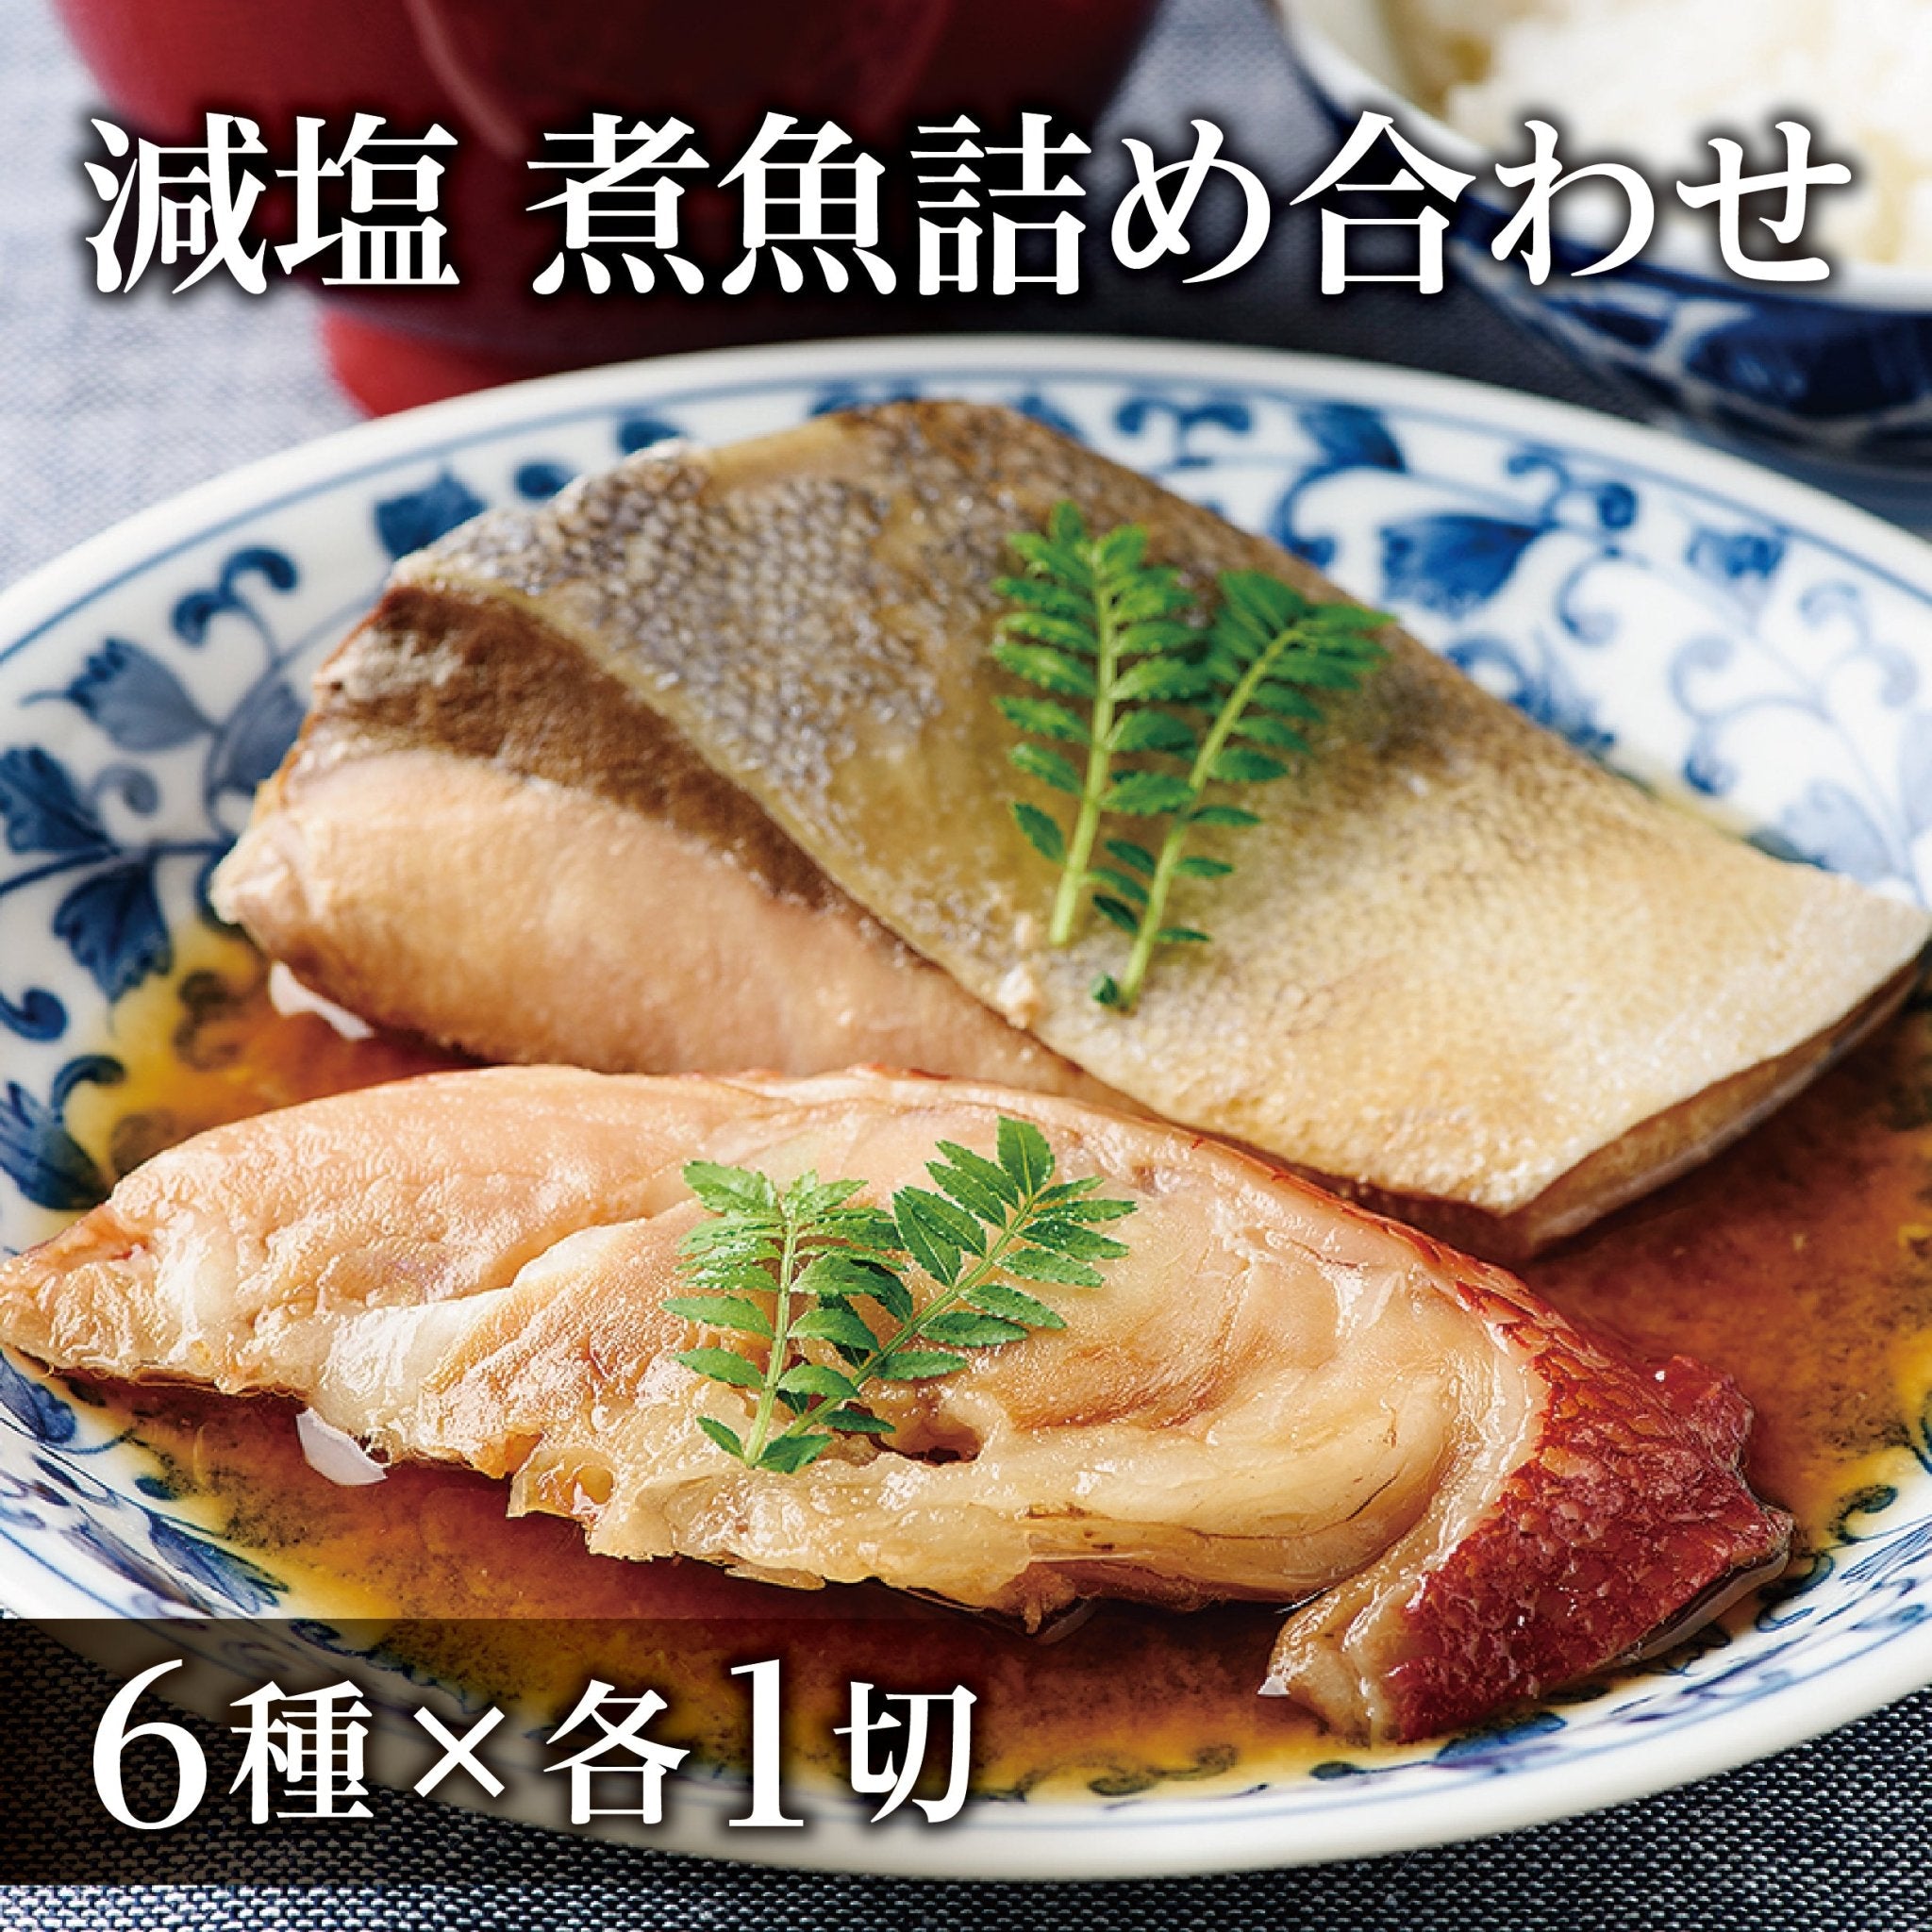 減塩 煮魚詰め合わせ - ふくしま市場｜福島県産品オンラインストア